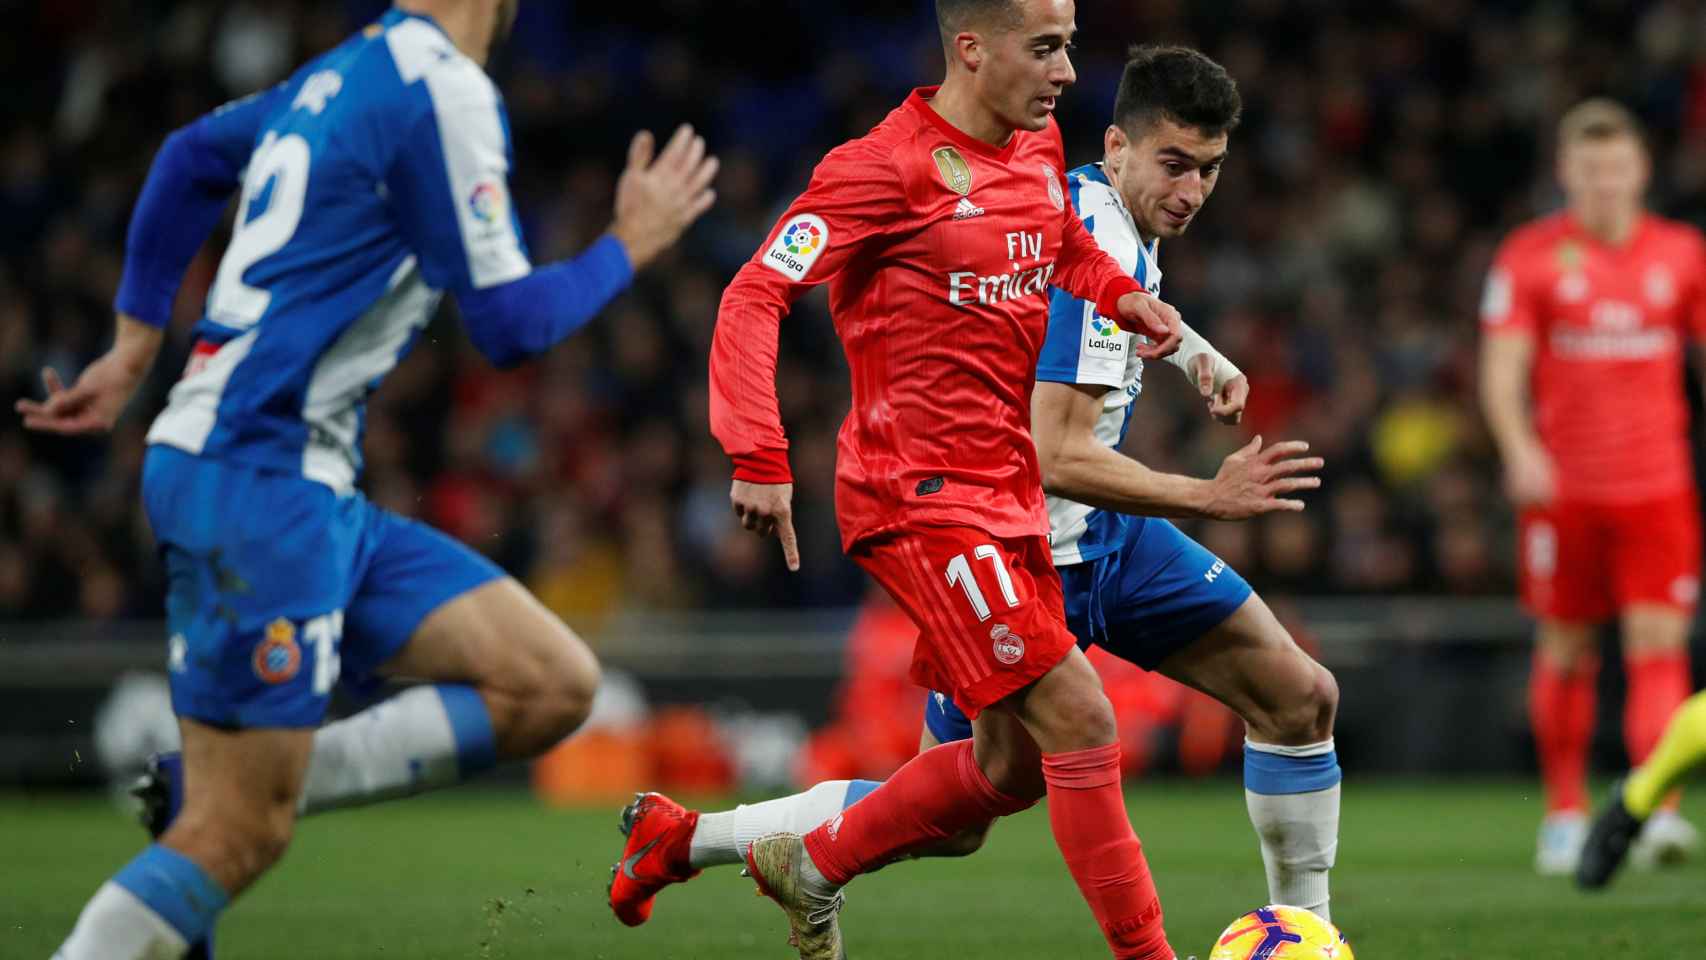 Lucas Vázquez controla el balón ante dos jugadores del Espanyol